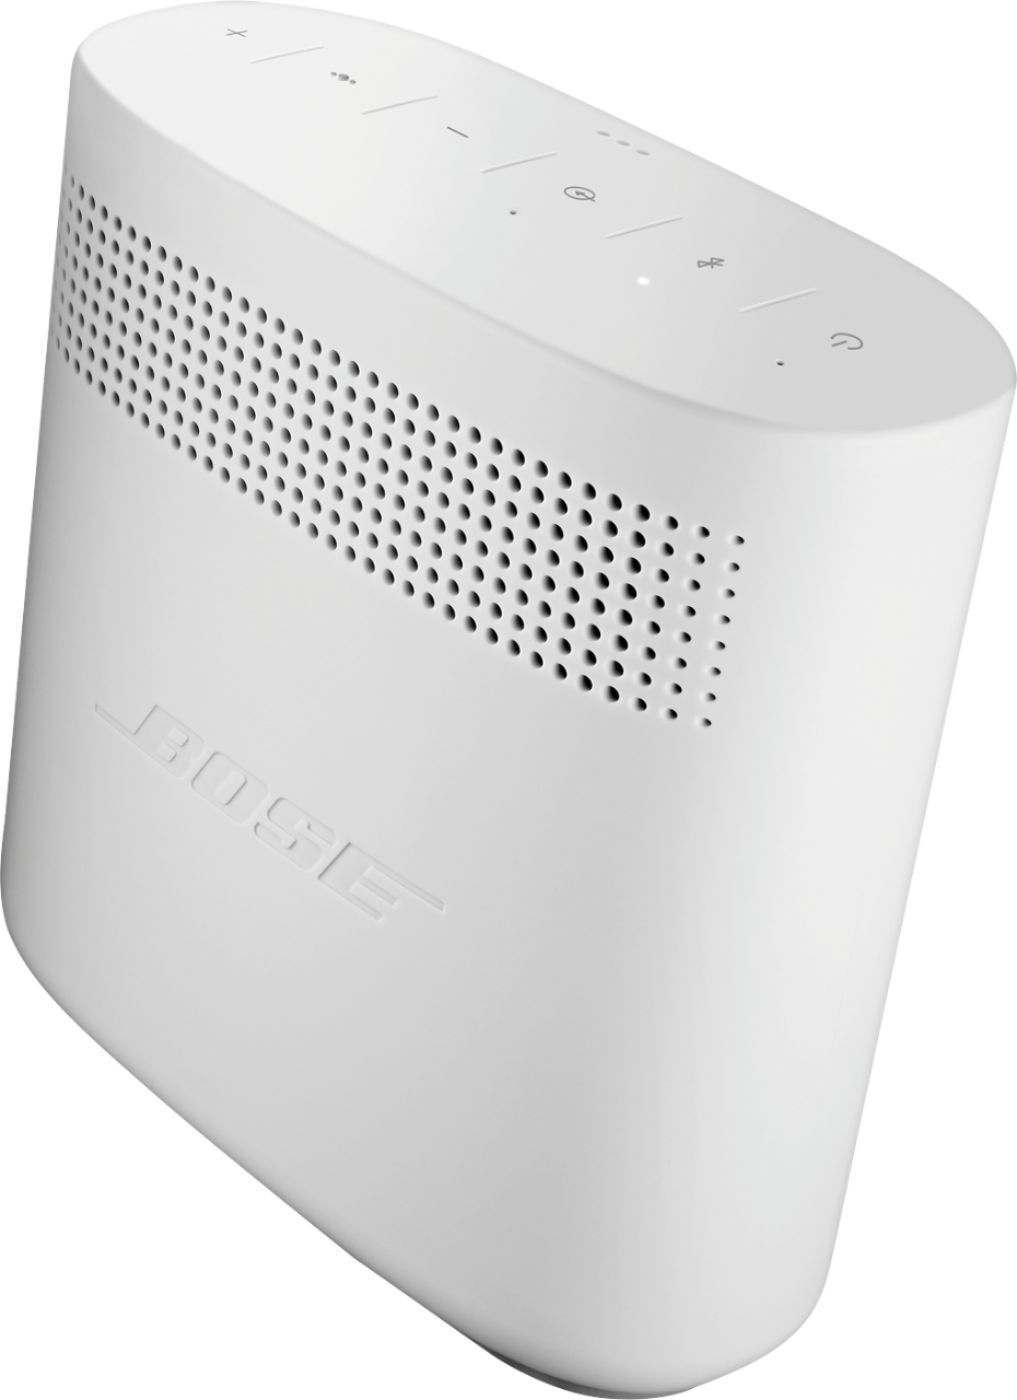 Bose SoundLink Bluetooth speaker is 39% off on